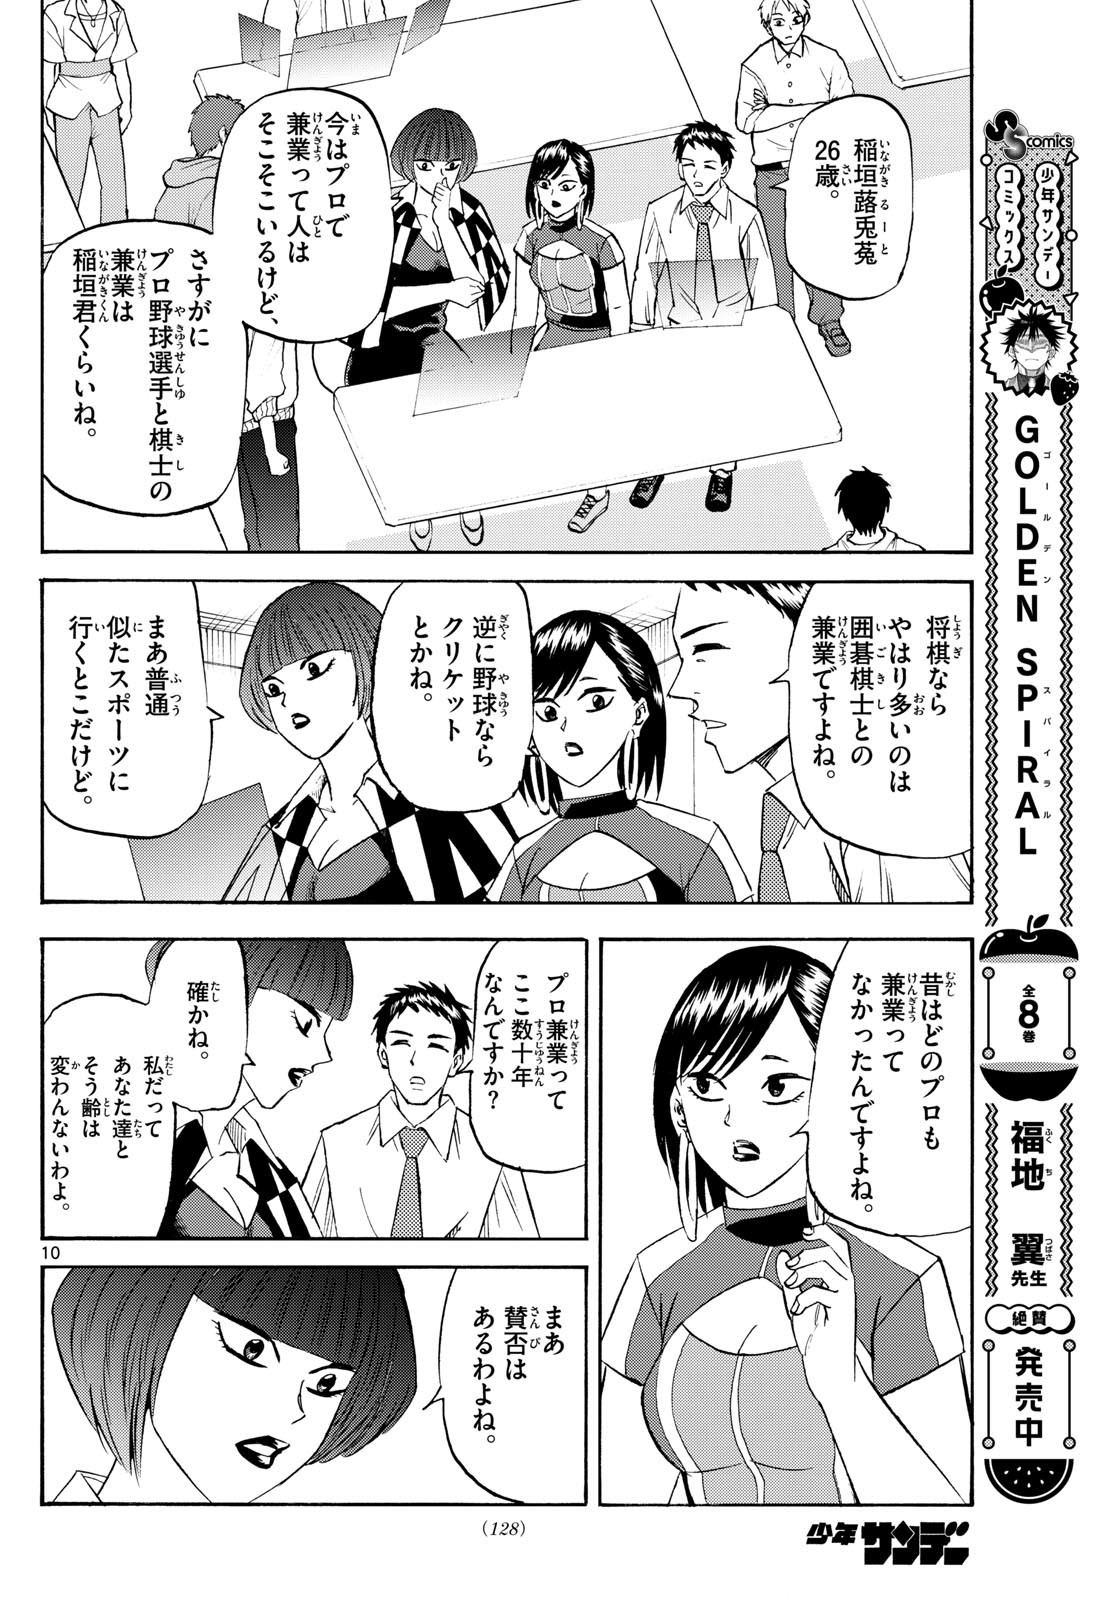 Tatsu to Ichigo - Chapter 197 - Page 10